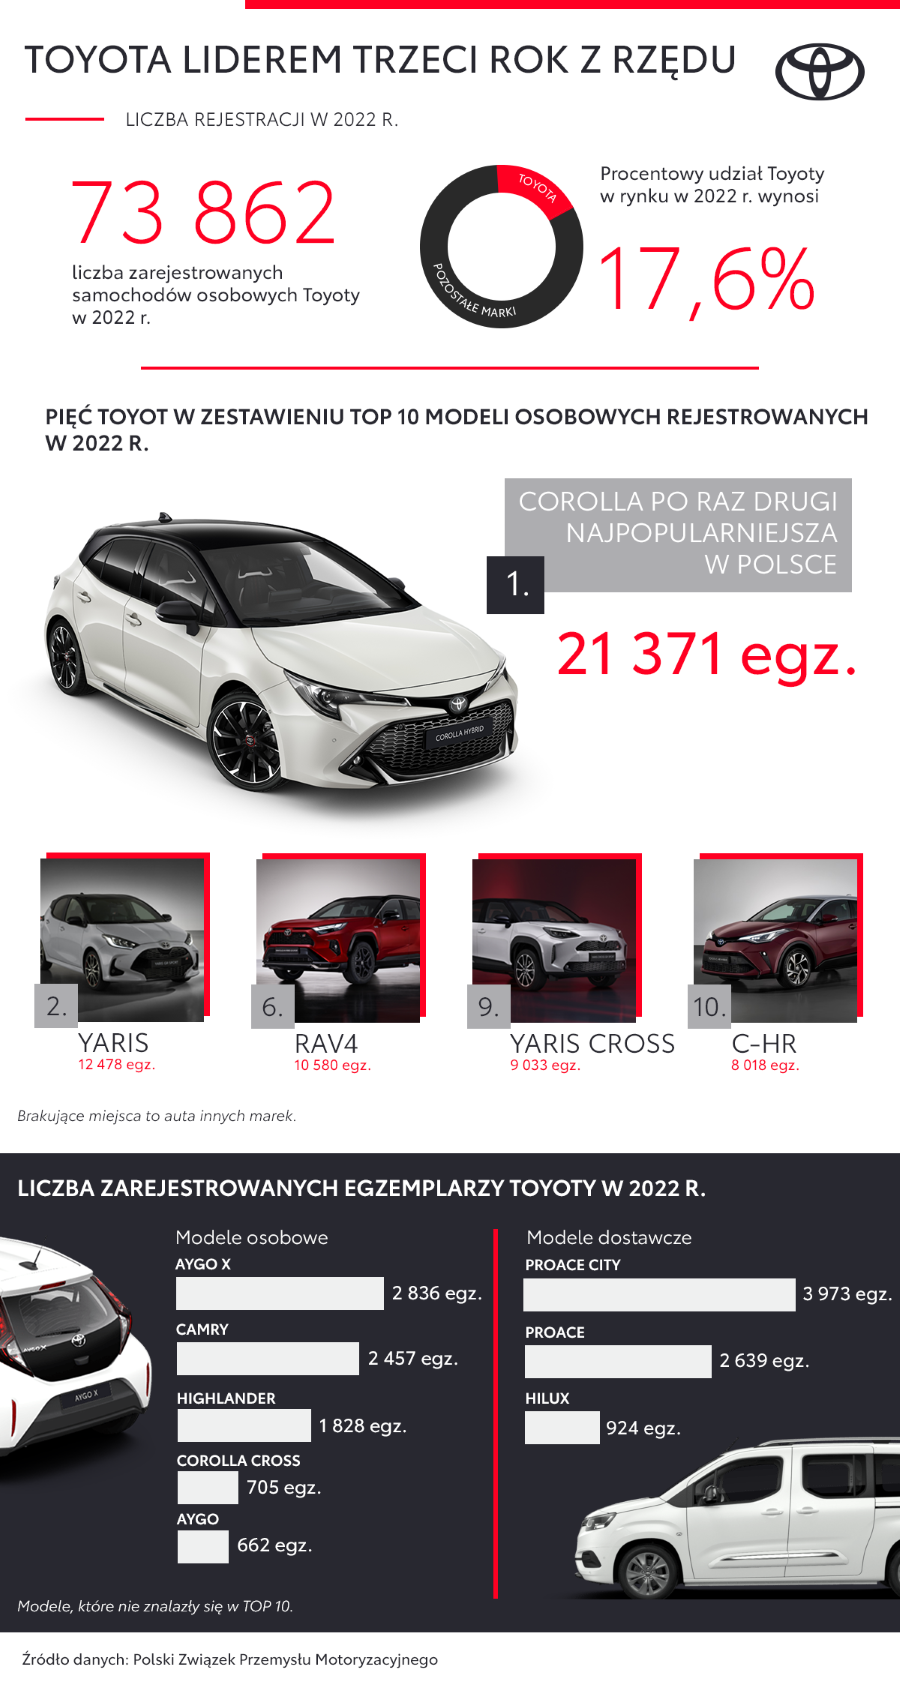 Toyota liderem polskiego rynku trzeci rok z rzędu. Corolla najpopularniejszym modelem 2022 roku